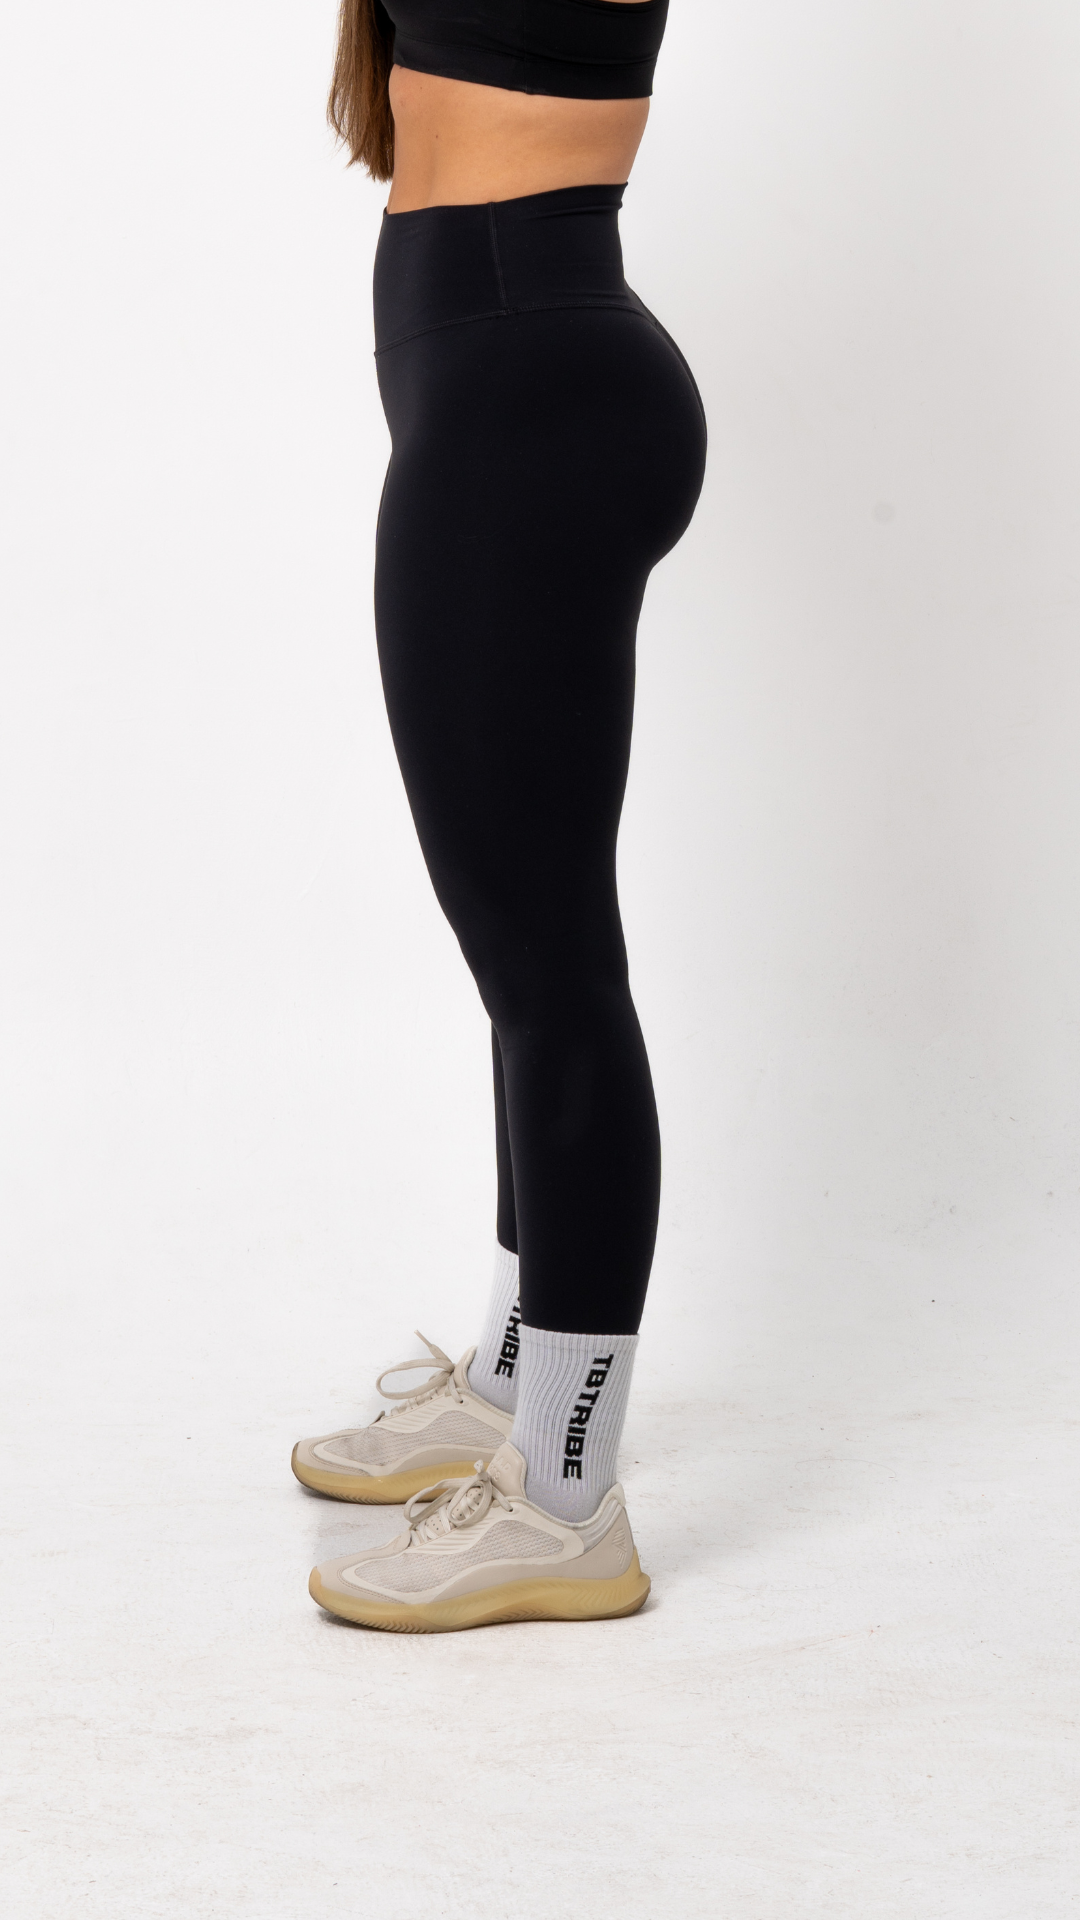 Black, high waist, full length leggings for gym, training, athleisure. The best black leggings